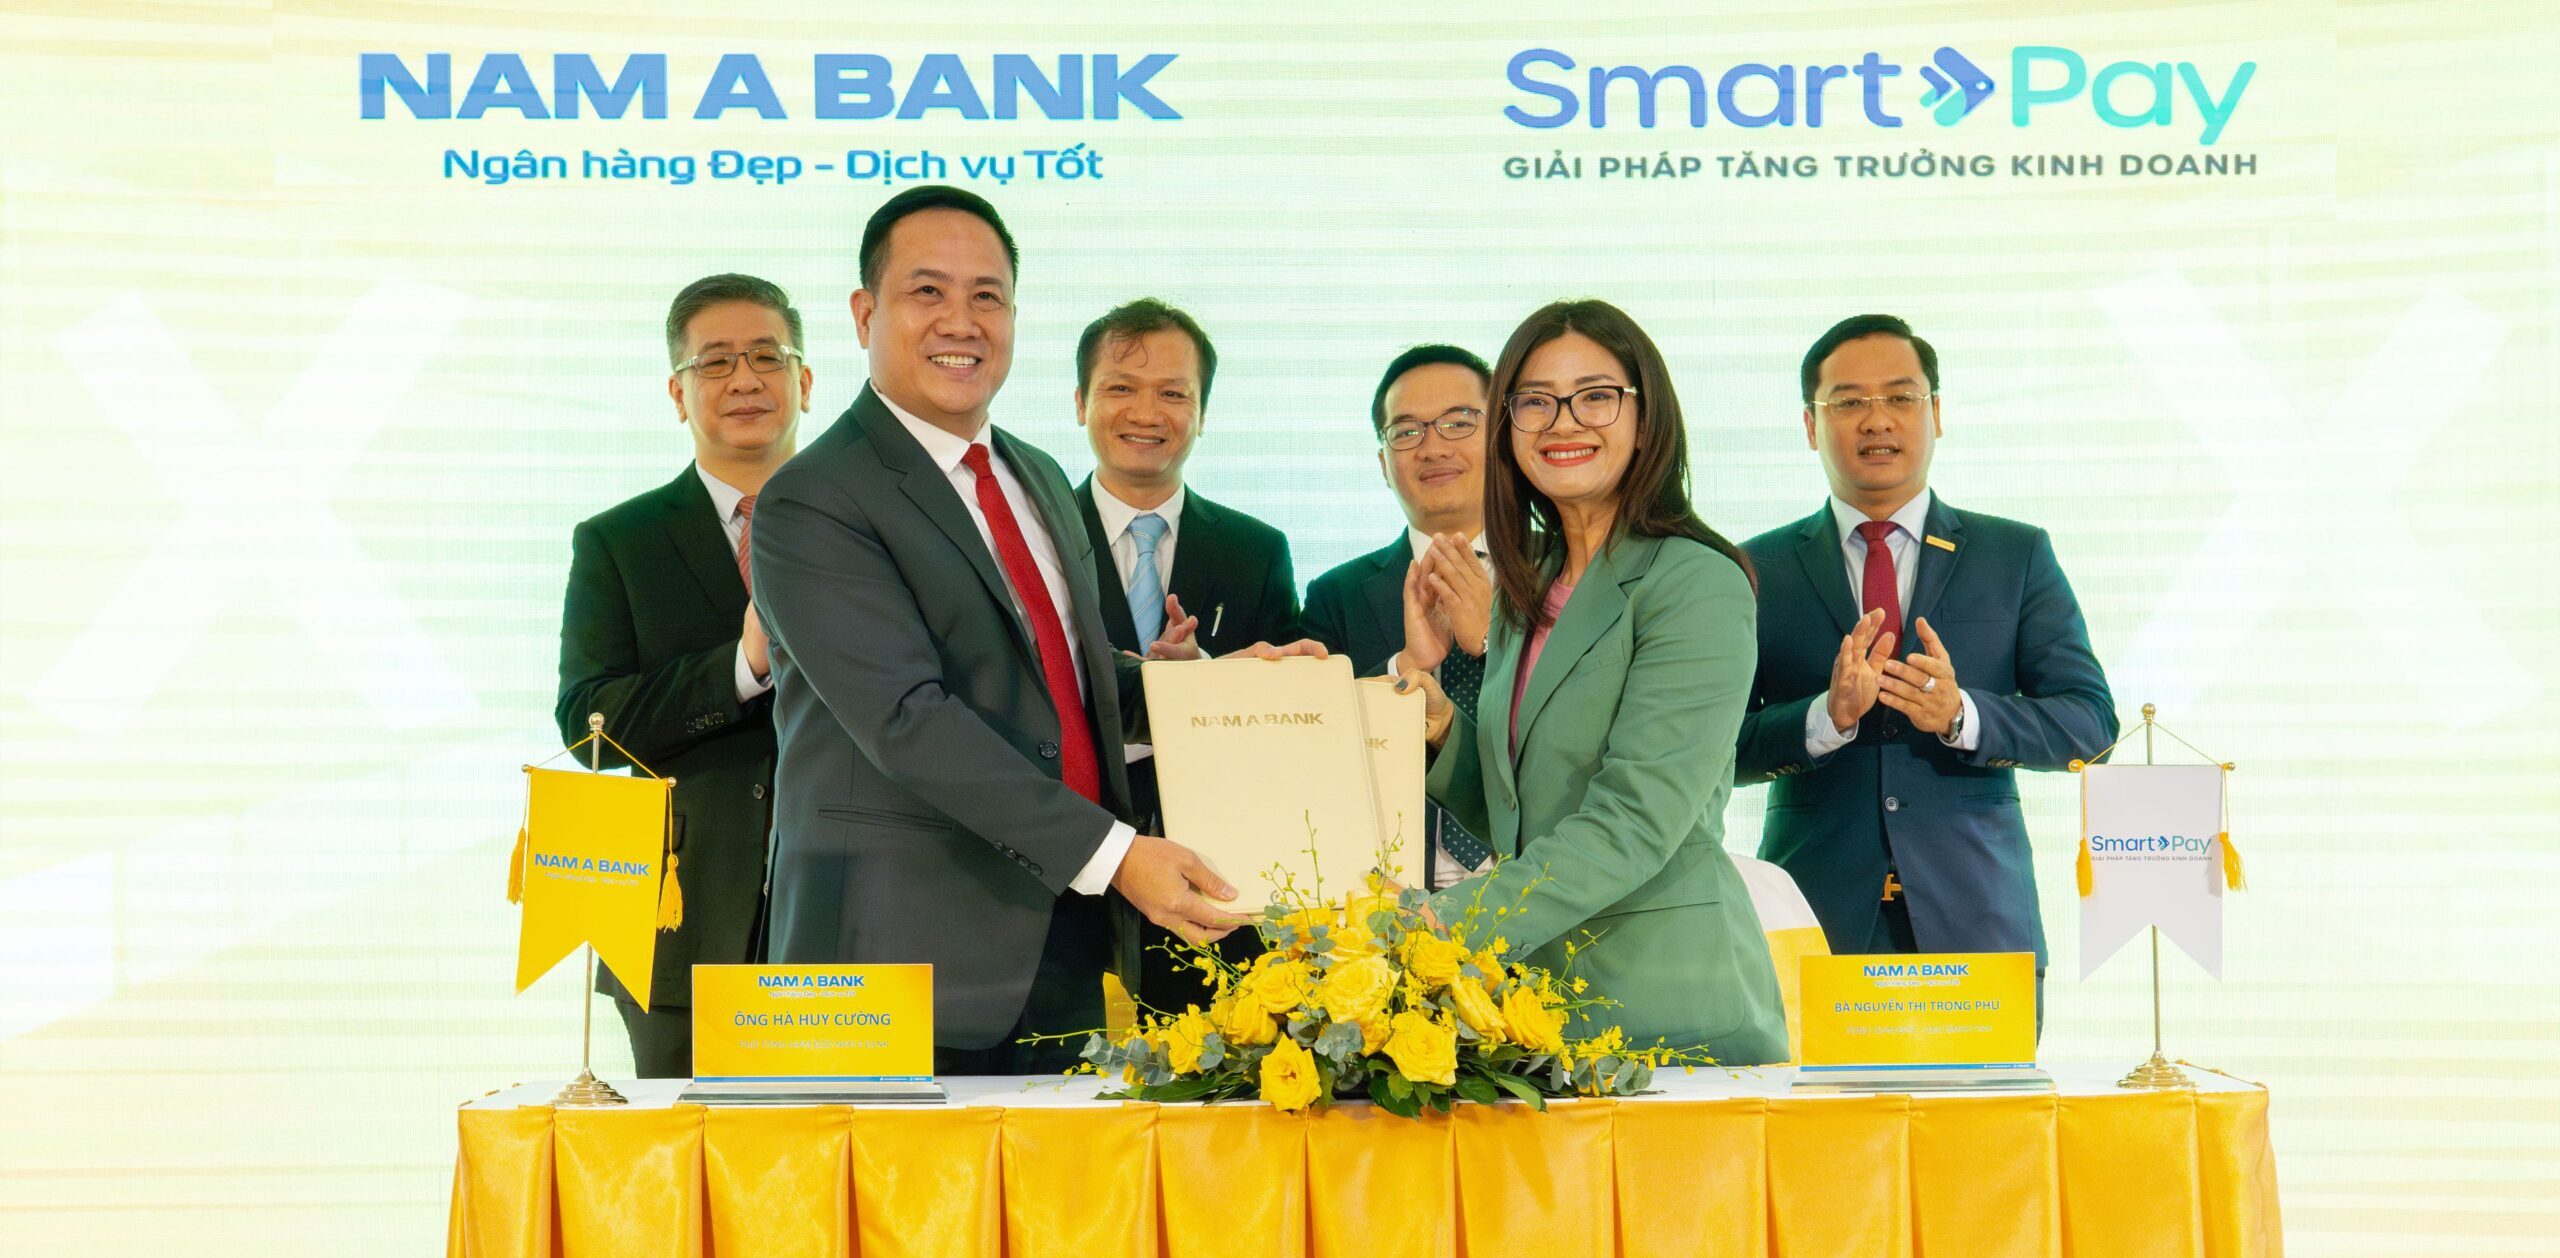 SmartPay giới thiệu dịch vụ kiều hối của Lien Viet Post Bank đến người dùng